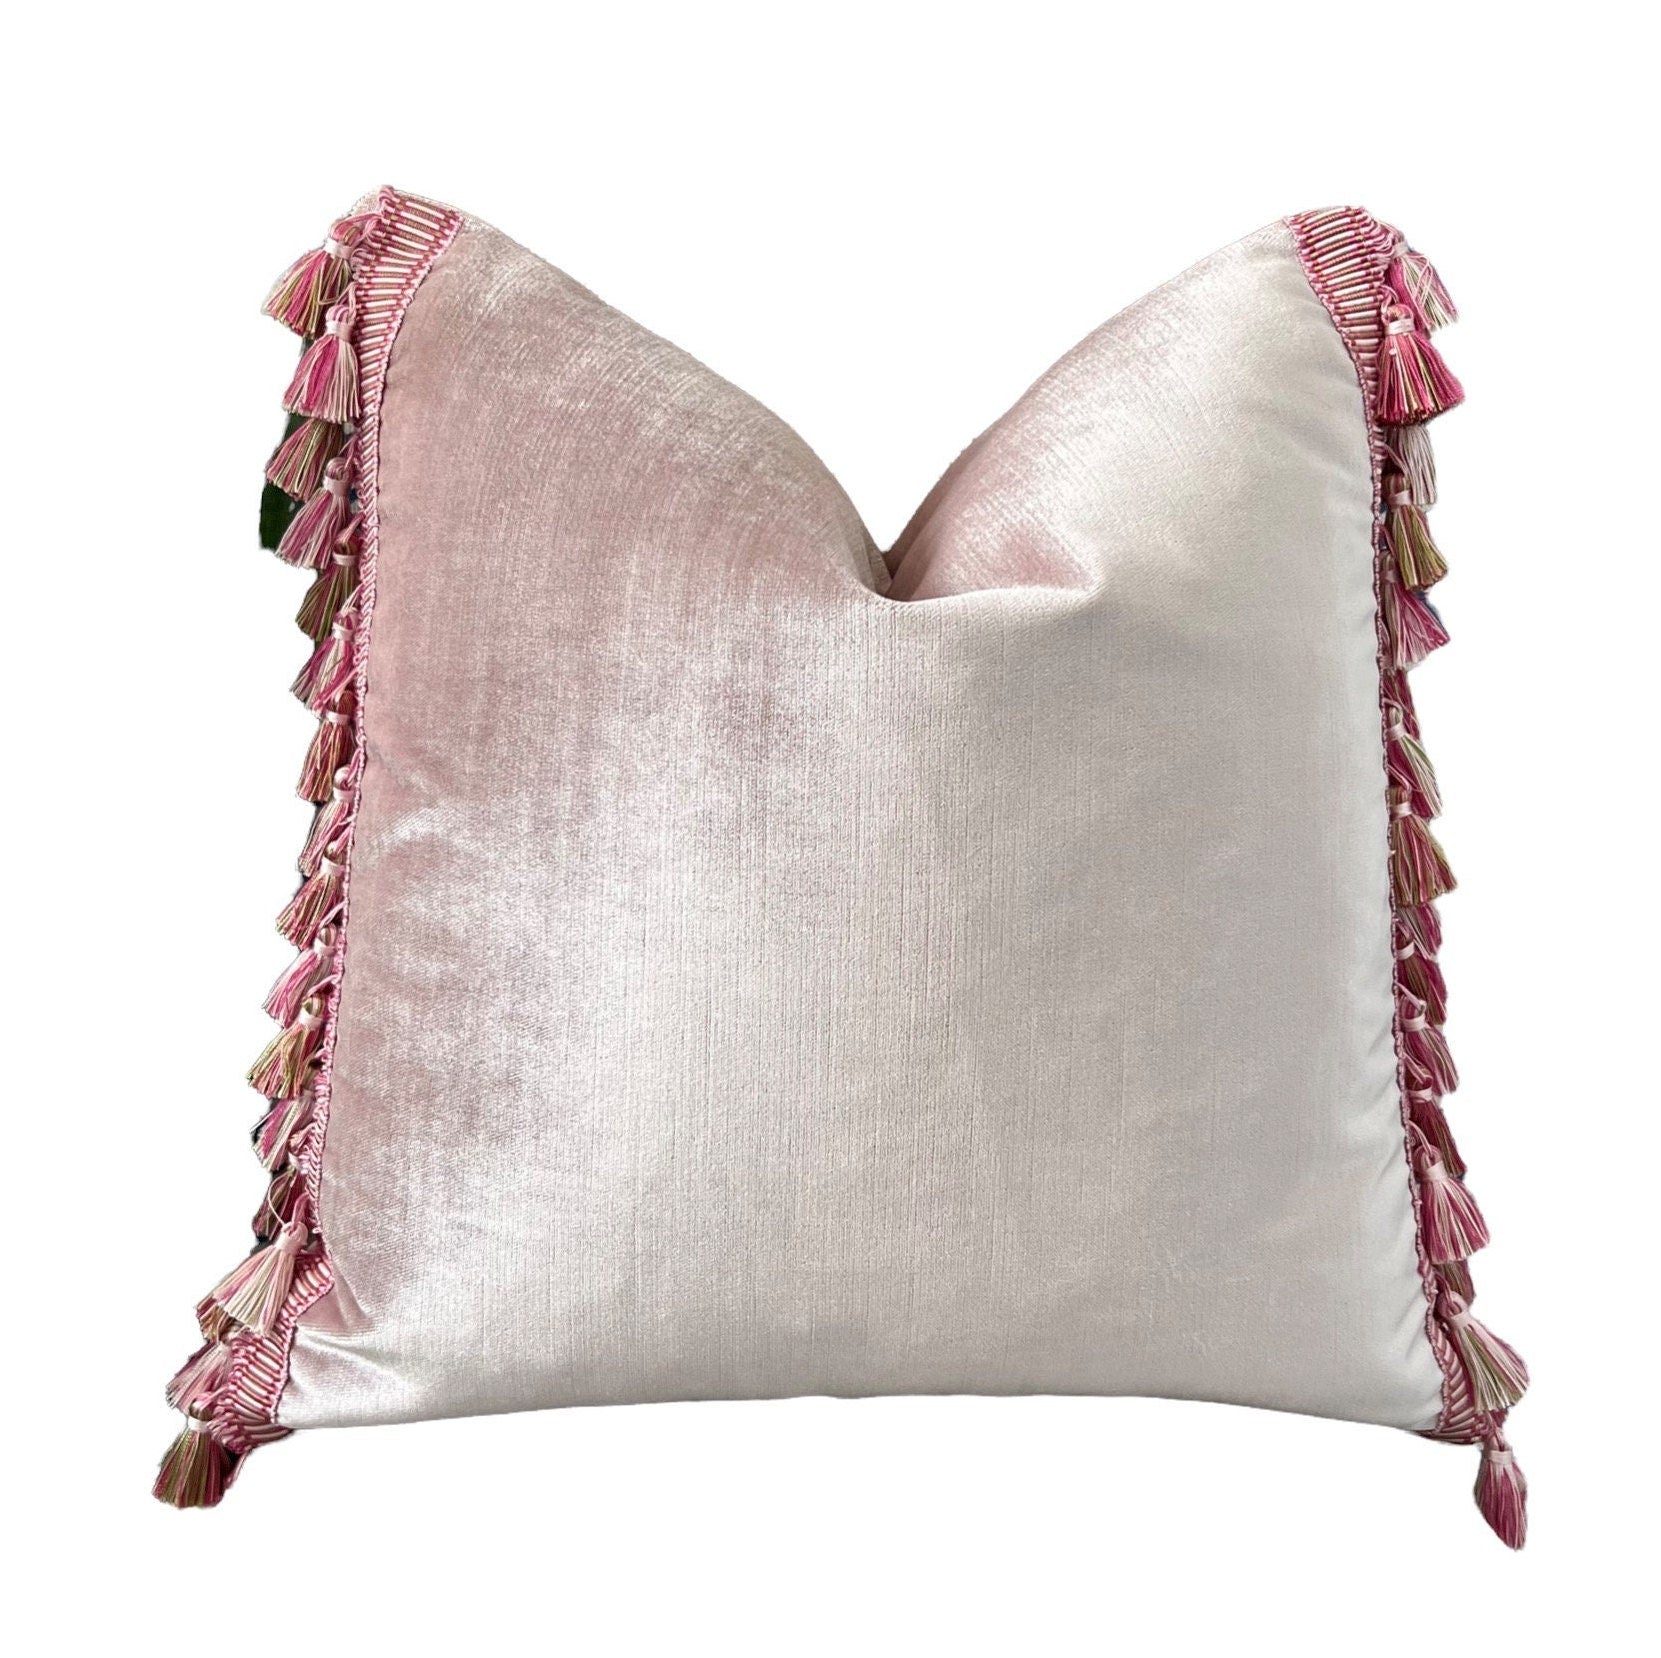 Designer Velvet Pillow in Blush with Tassel Trim. High End Pillow Cover, Modern Lumbar Velvet Pillow, Accent Throw Pillow Cover